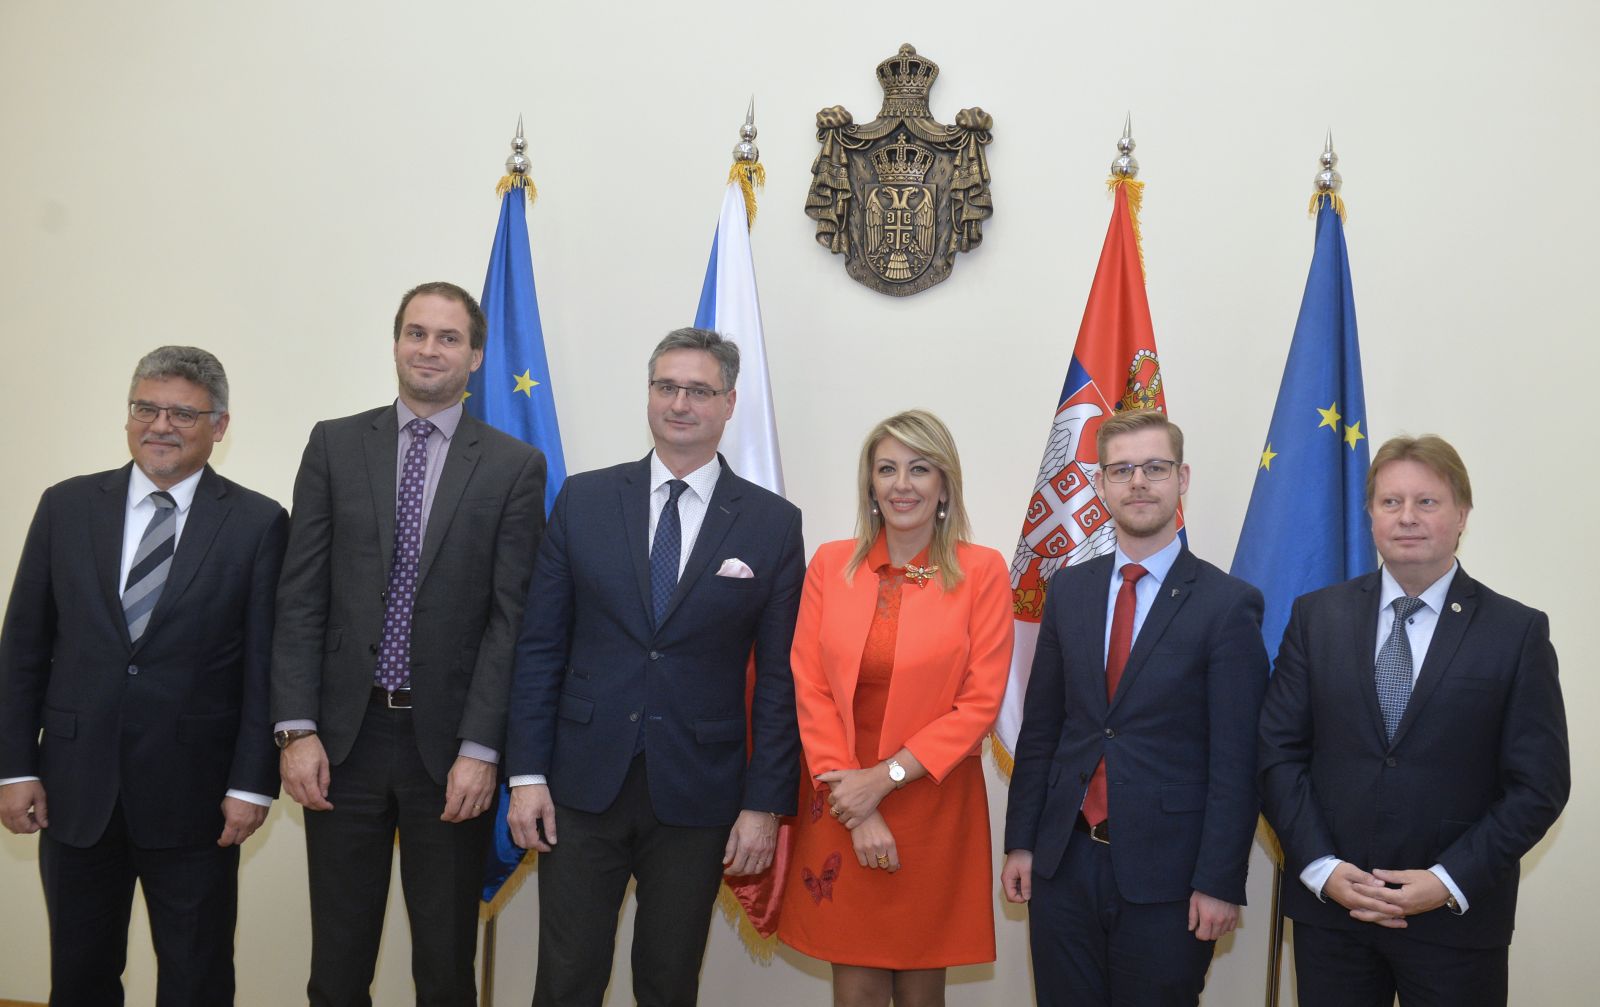 Ј. Јоксимовић и чешки парламентарци: Чешка ће активно подржавати европске интеграције Србије